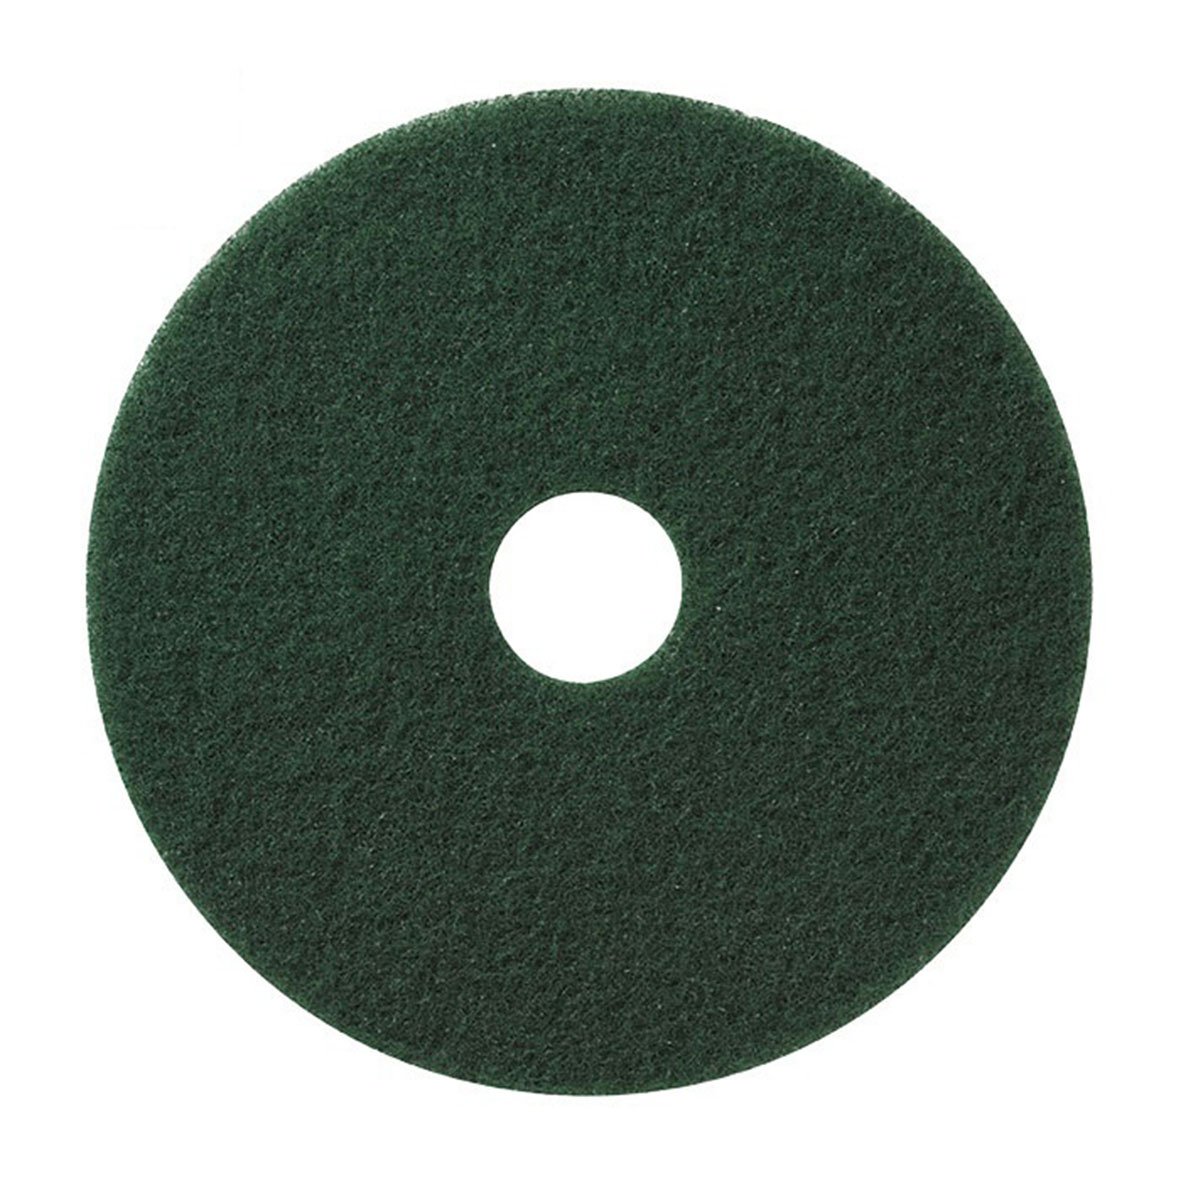 Skurrondell Clean Part standard 17"/432 mm grön